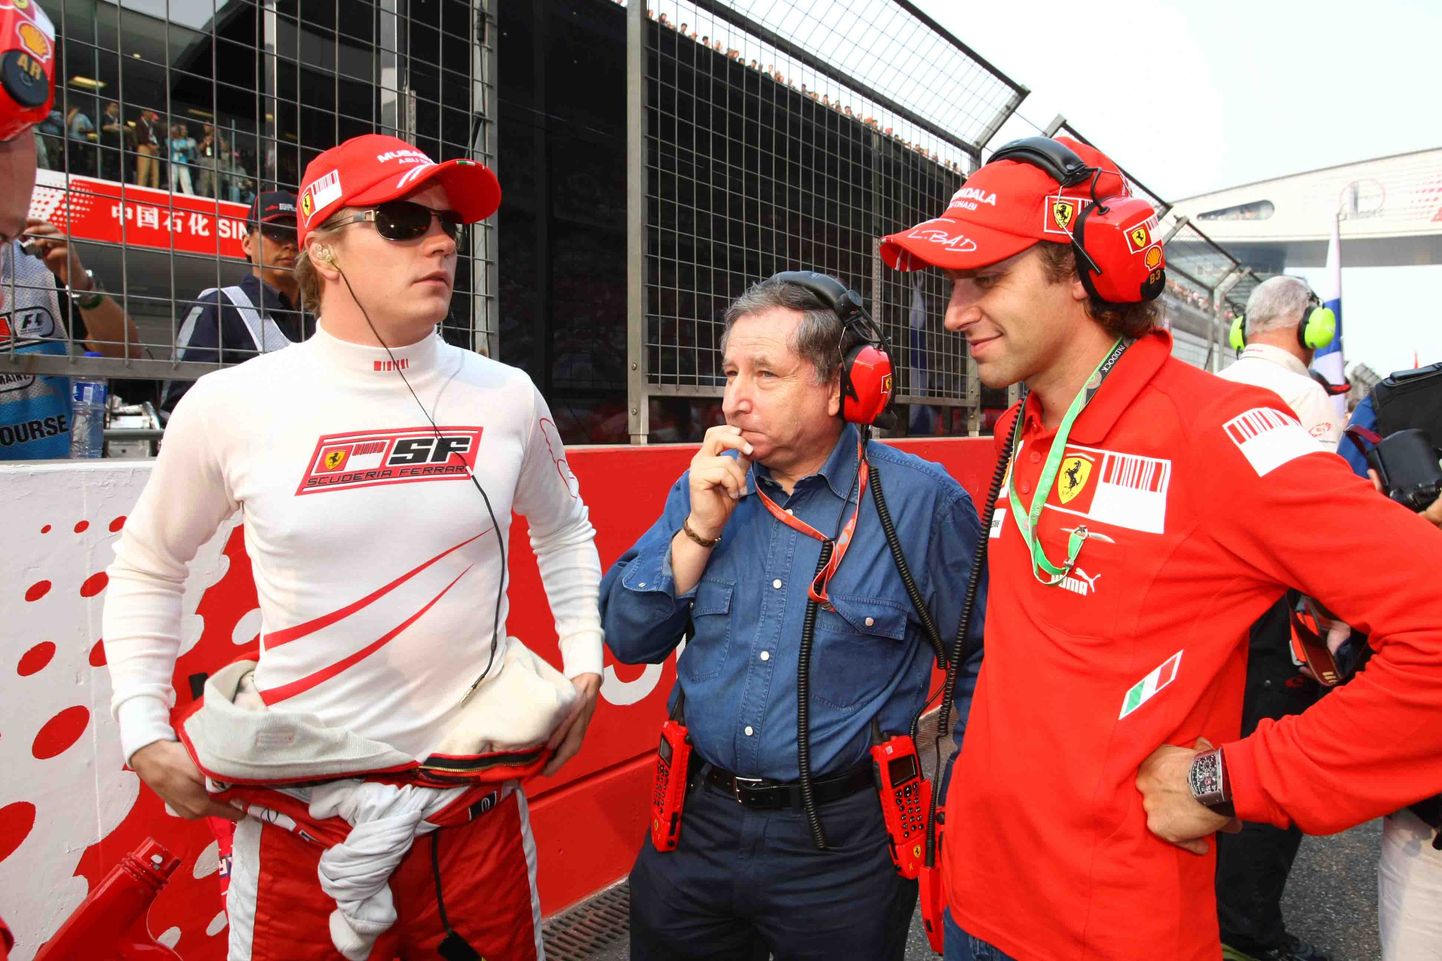 Jean Todt (keskel) töötas aastaid Ferraris. Nüüd peab ta FIA presidendina hea seisma, et võistkond sarjas liiga suuri eeliseid ei saaks.